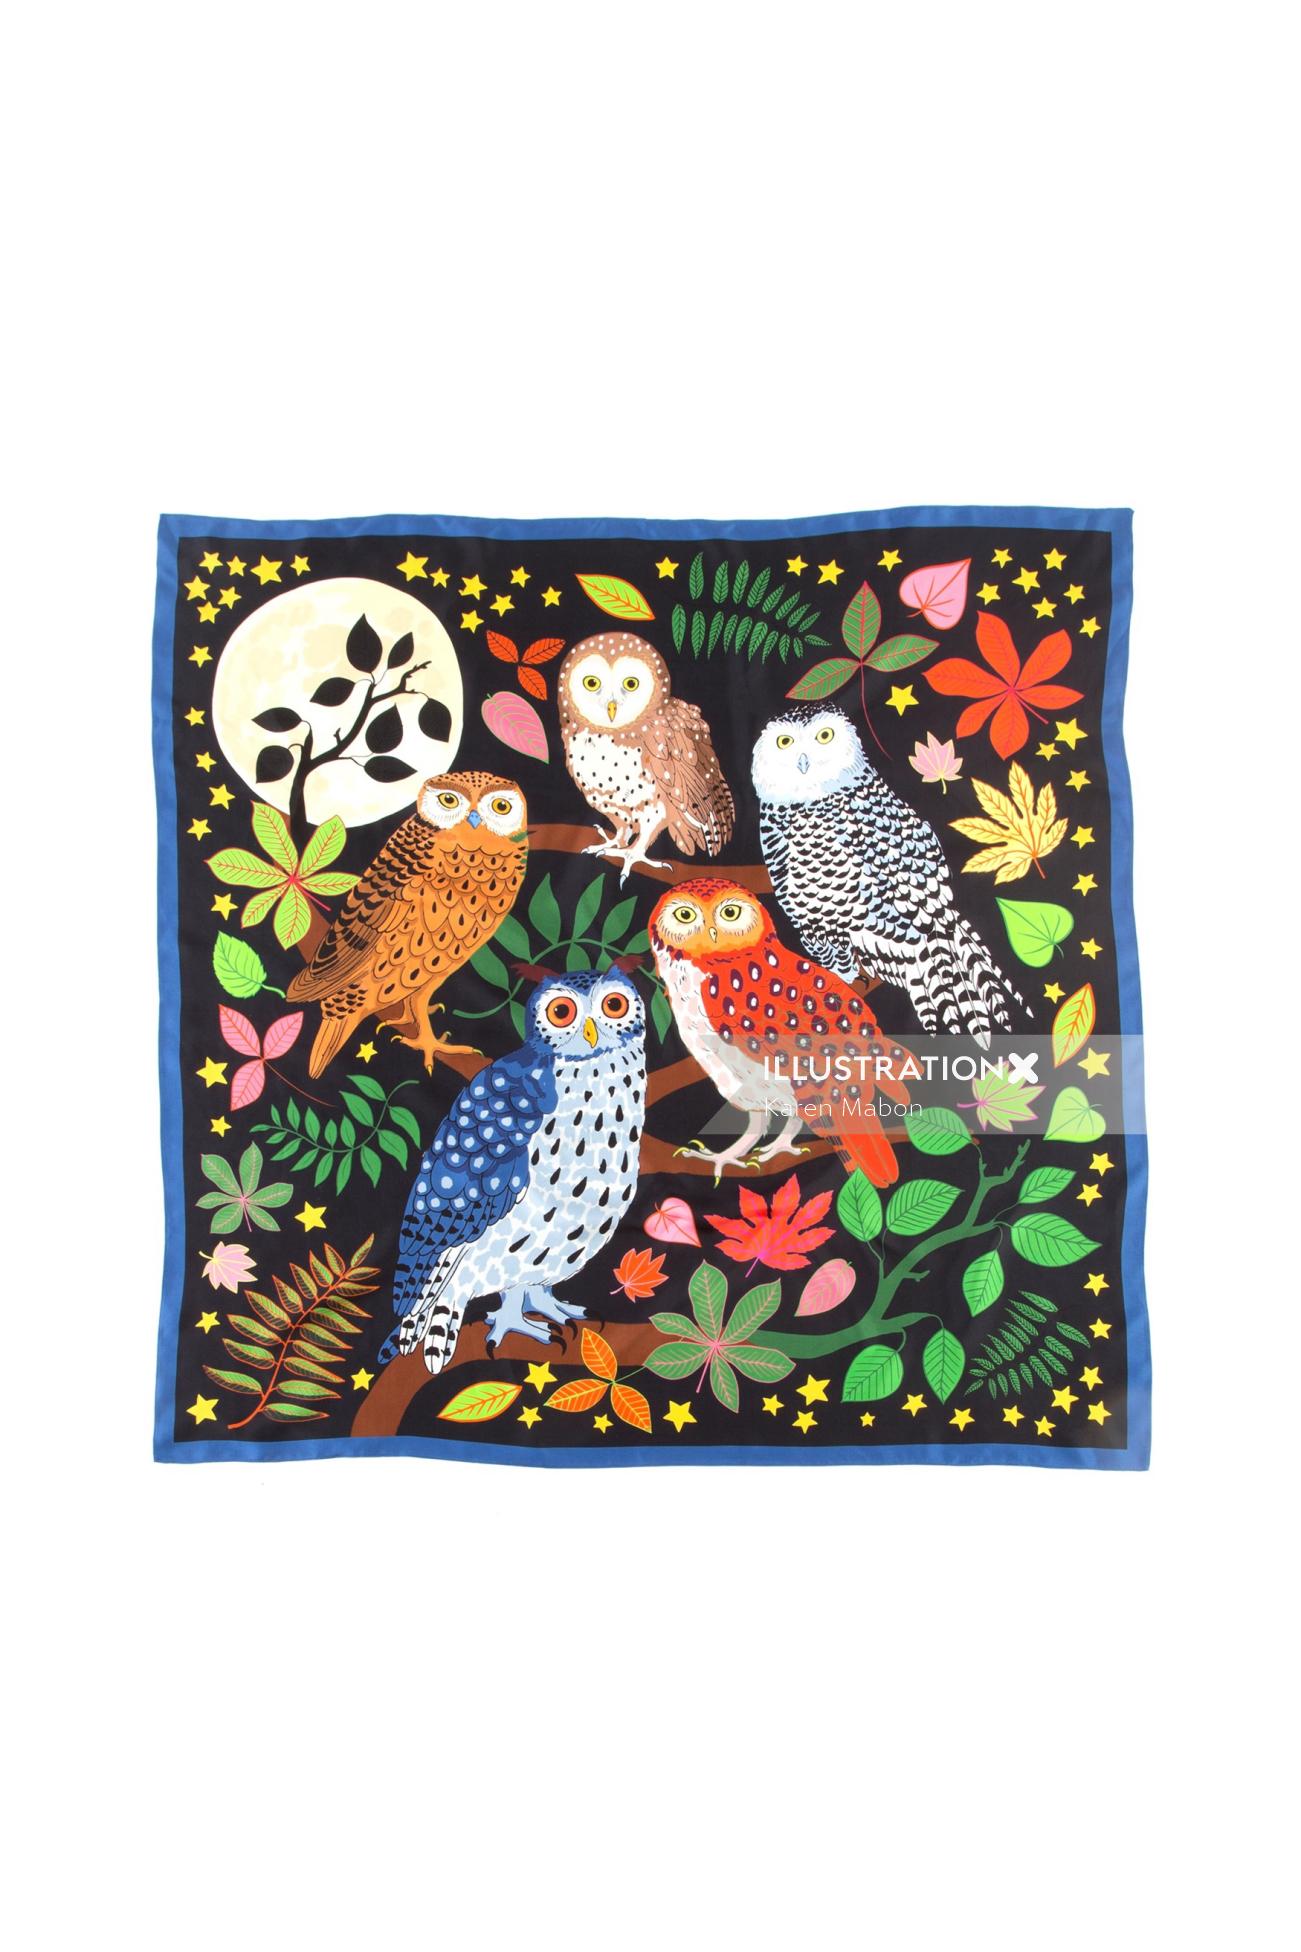 Parliament of Night Owls impresso em lenço de seda